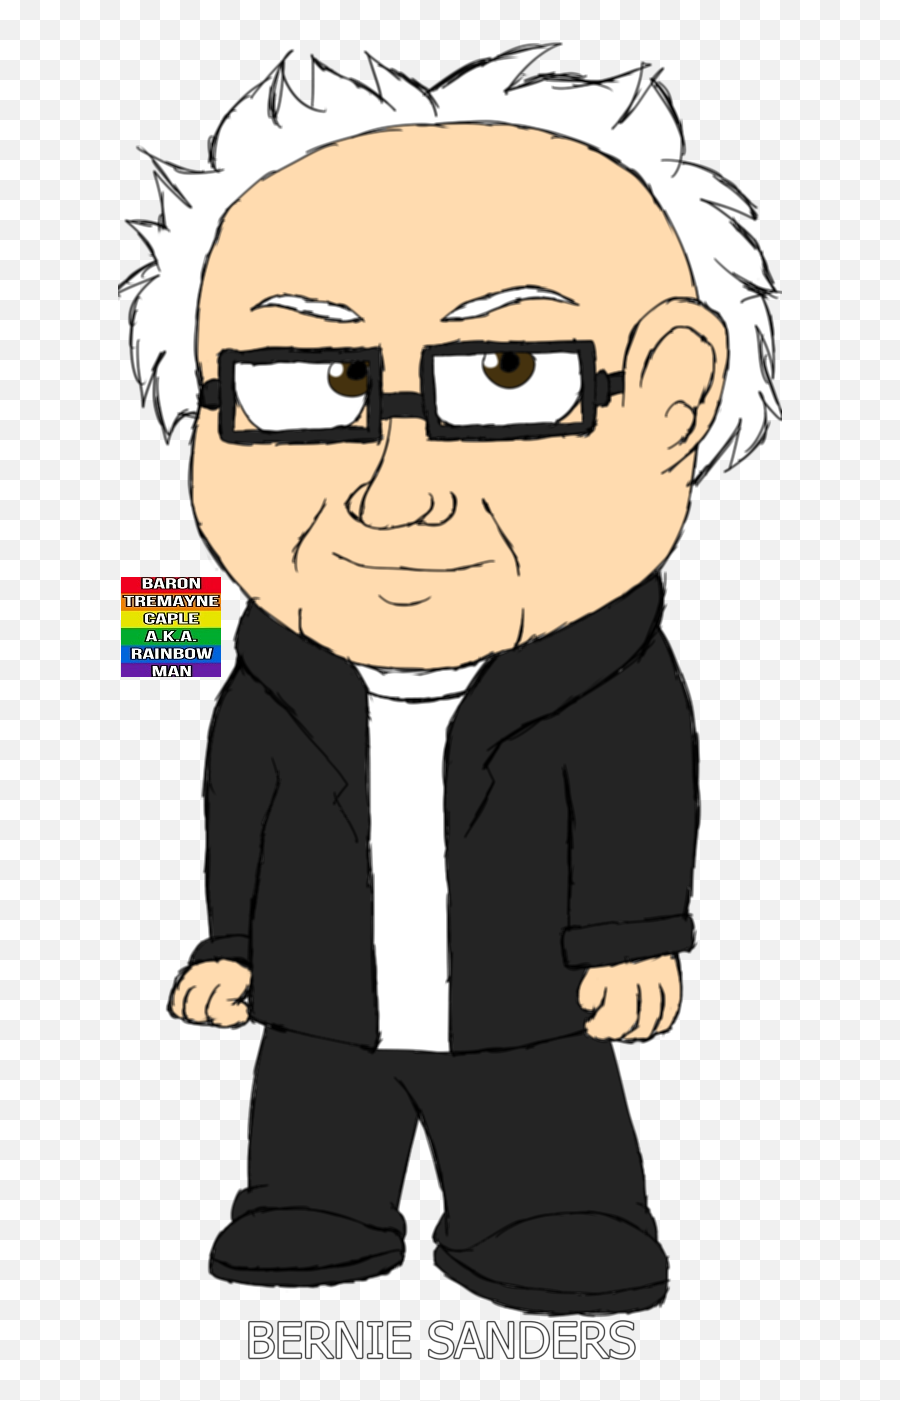 Bernie Sanders U2014 Weasyl - Fictional Character Emoji,Bernie Sanders Png